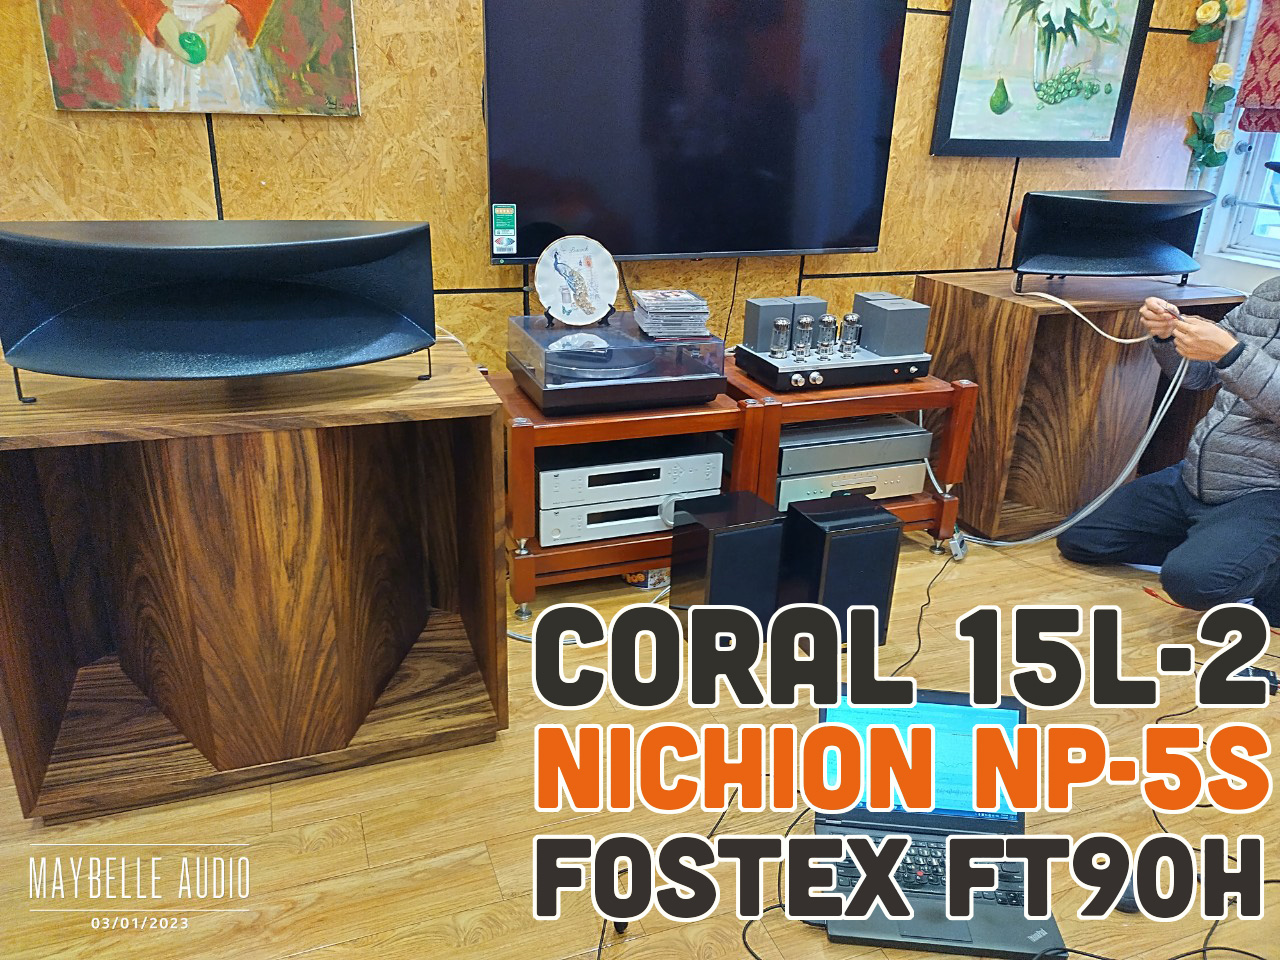 Thiết kế phân tần 3 way gồm bass 40 Coral 15L-2, củ kèn Nichion NP-5S và siêu treble Fostex FT90H